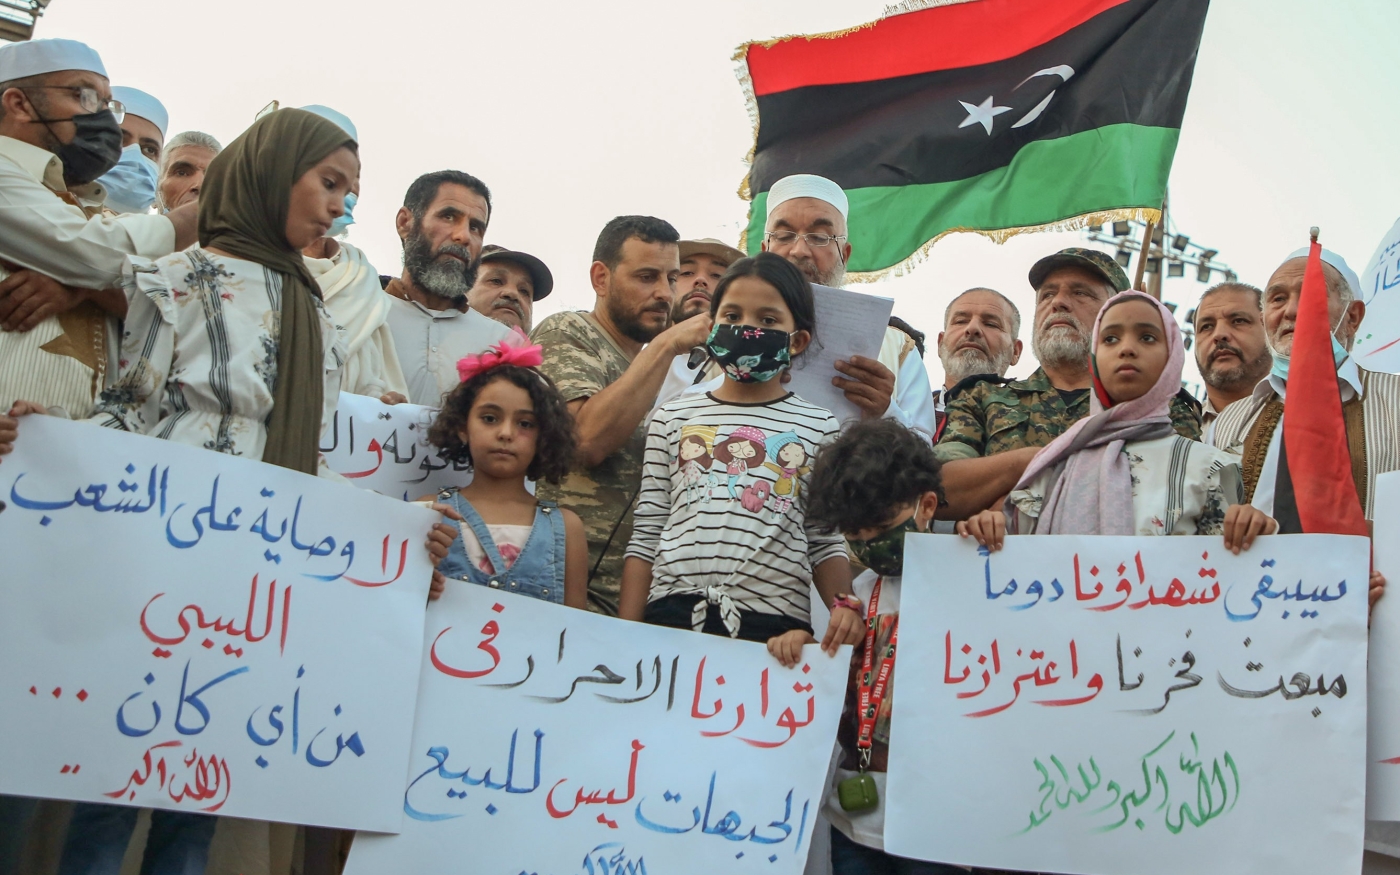 Des manifestants libyens brandissent des pancartes et des drapeaux libyens lors d’un rassemblement sur la place des Martyrs de Tripoli pour protester contre la détérioration de la situation politique et sécuritaire et des conditions de vie, le 2 octobre (AFP)